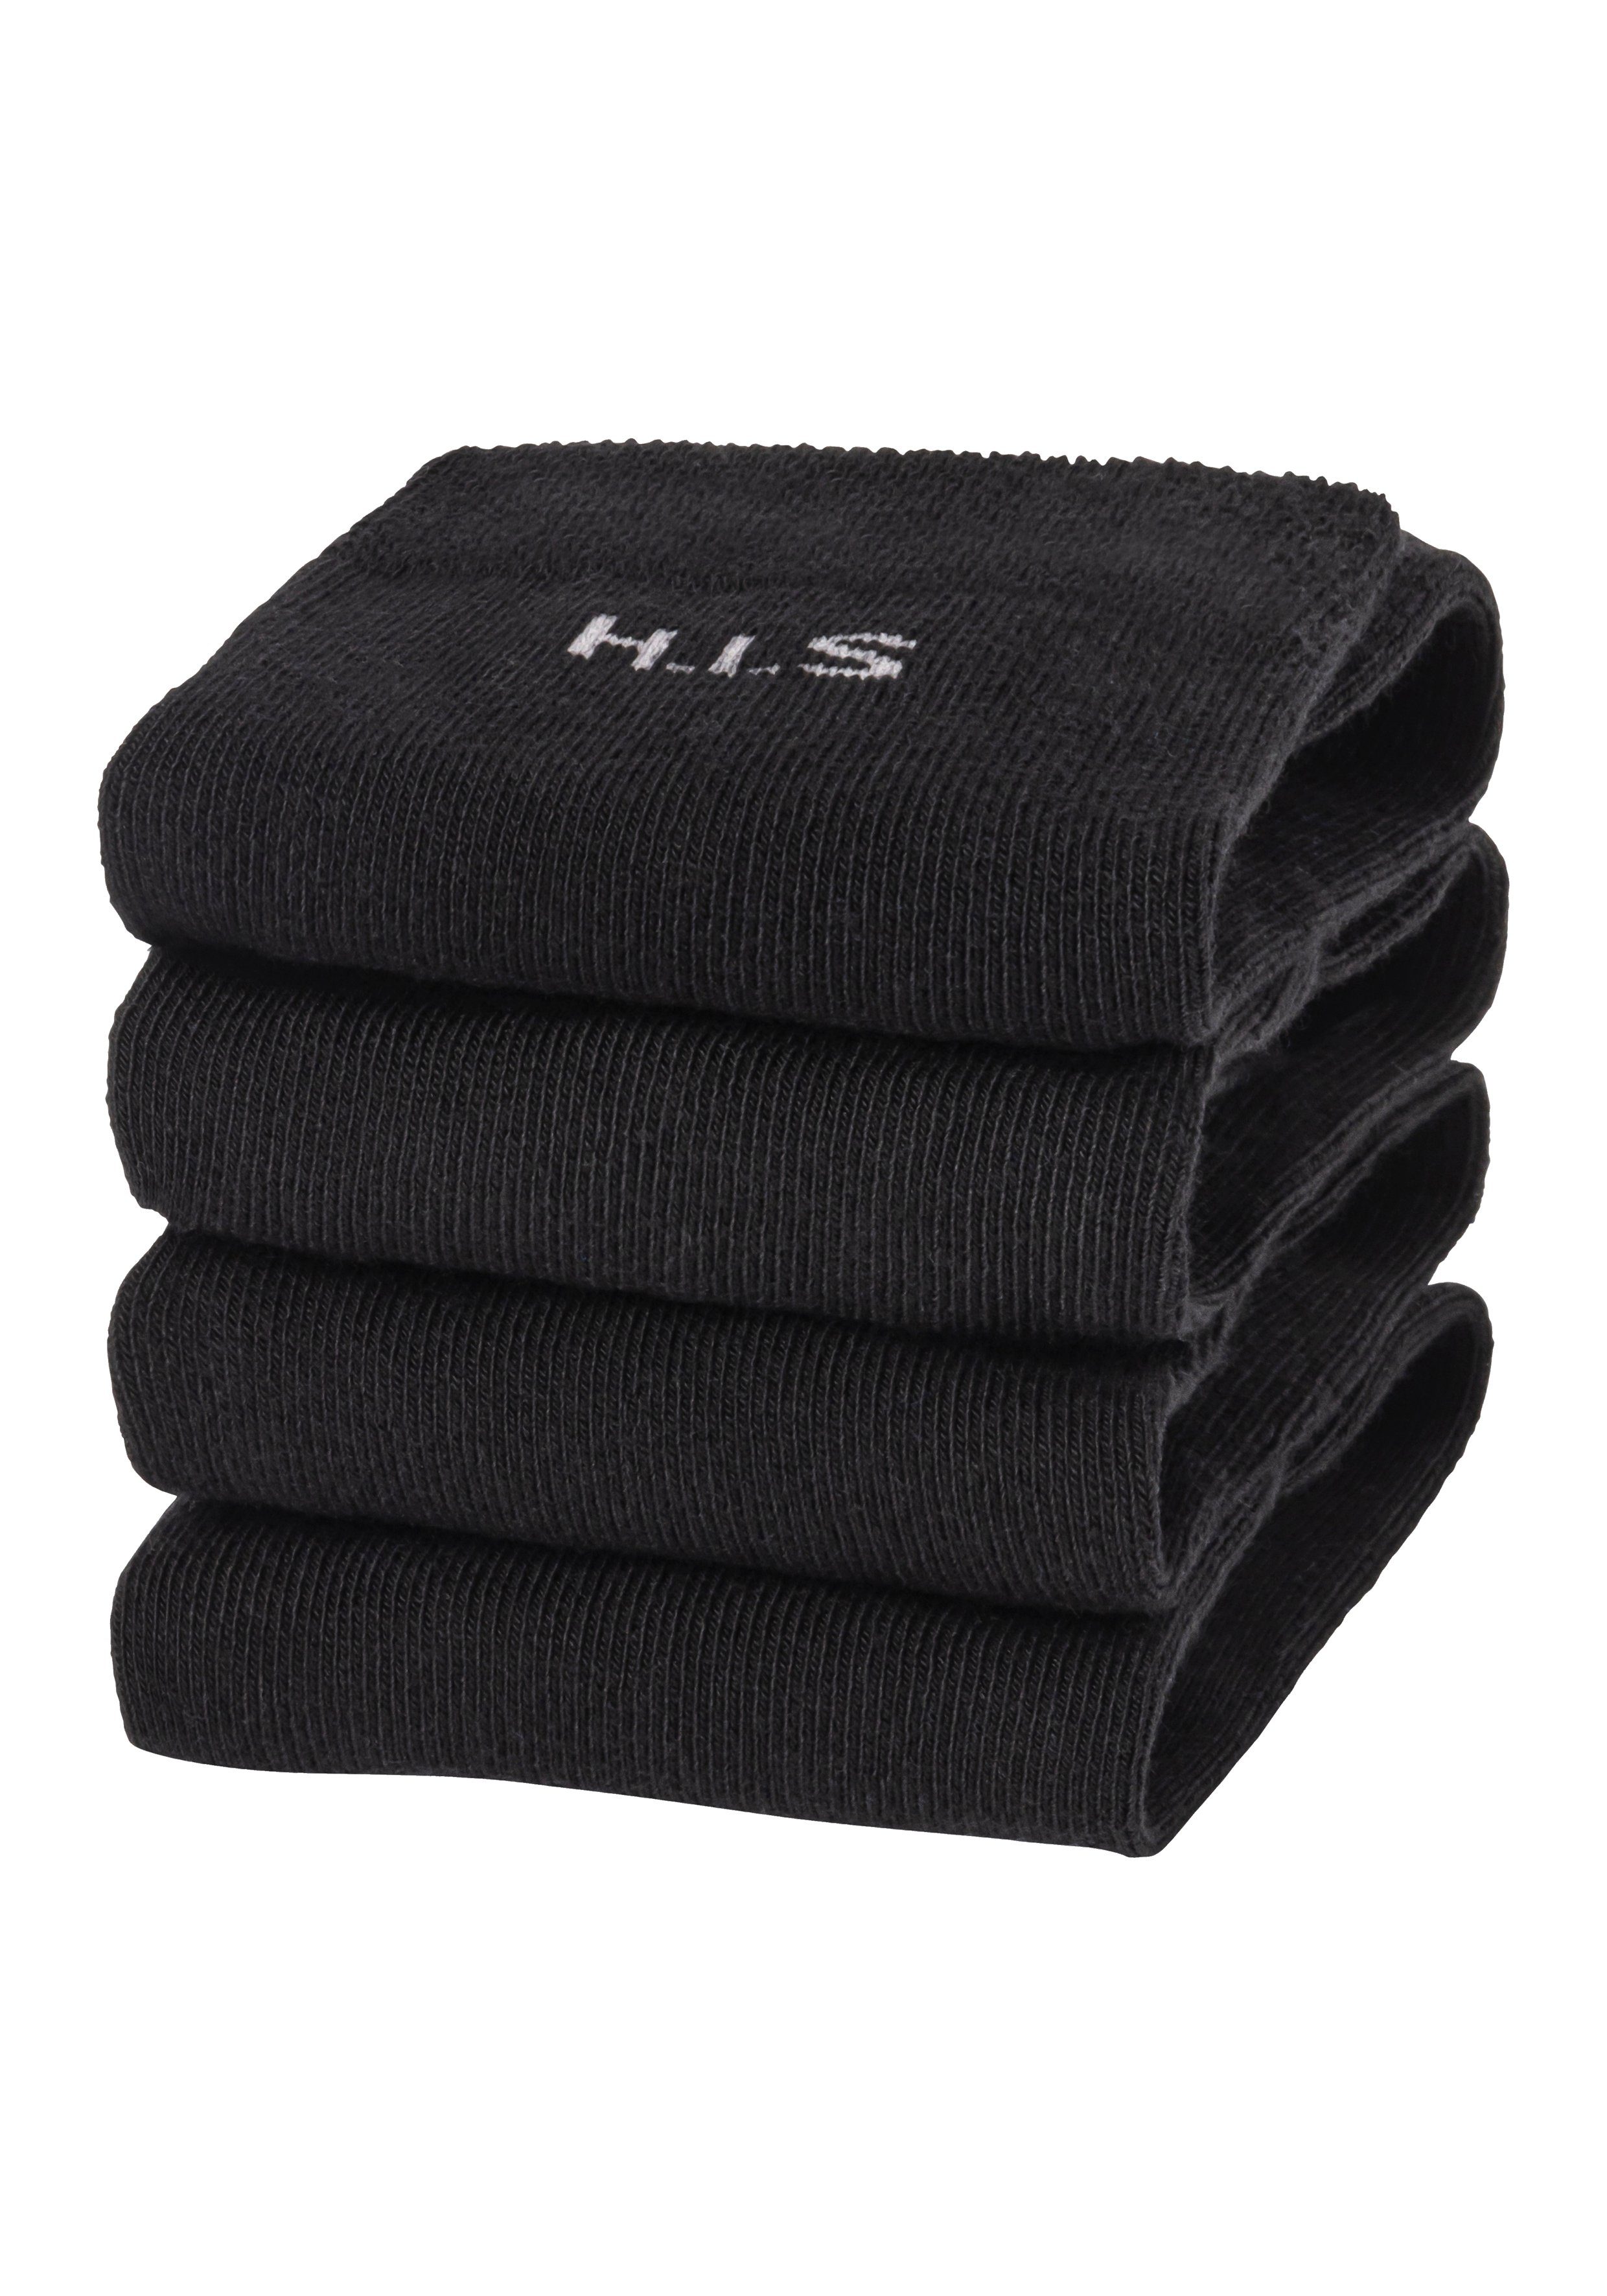 H.I.S Socken (Set, 4-Paar) ohne Bündchen schwarz 4x einschneidendes